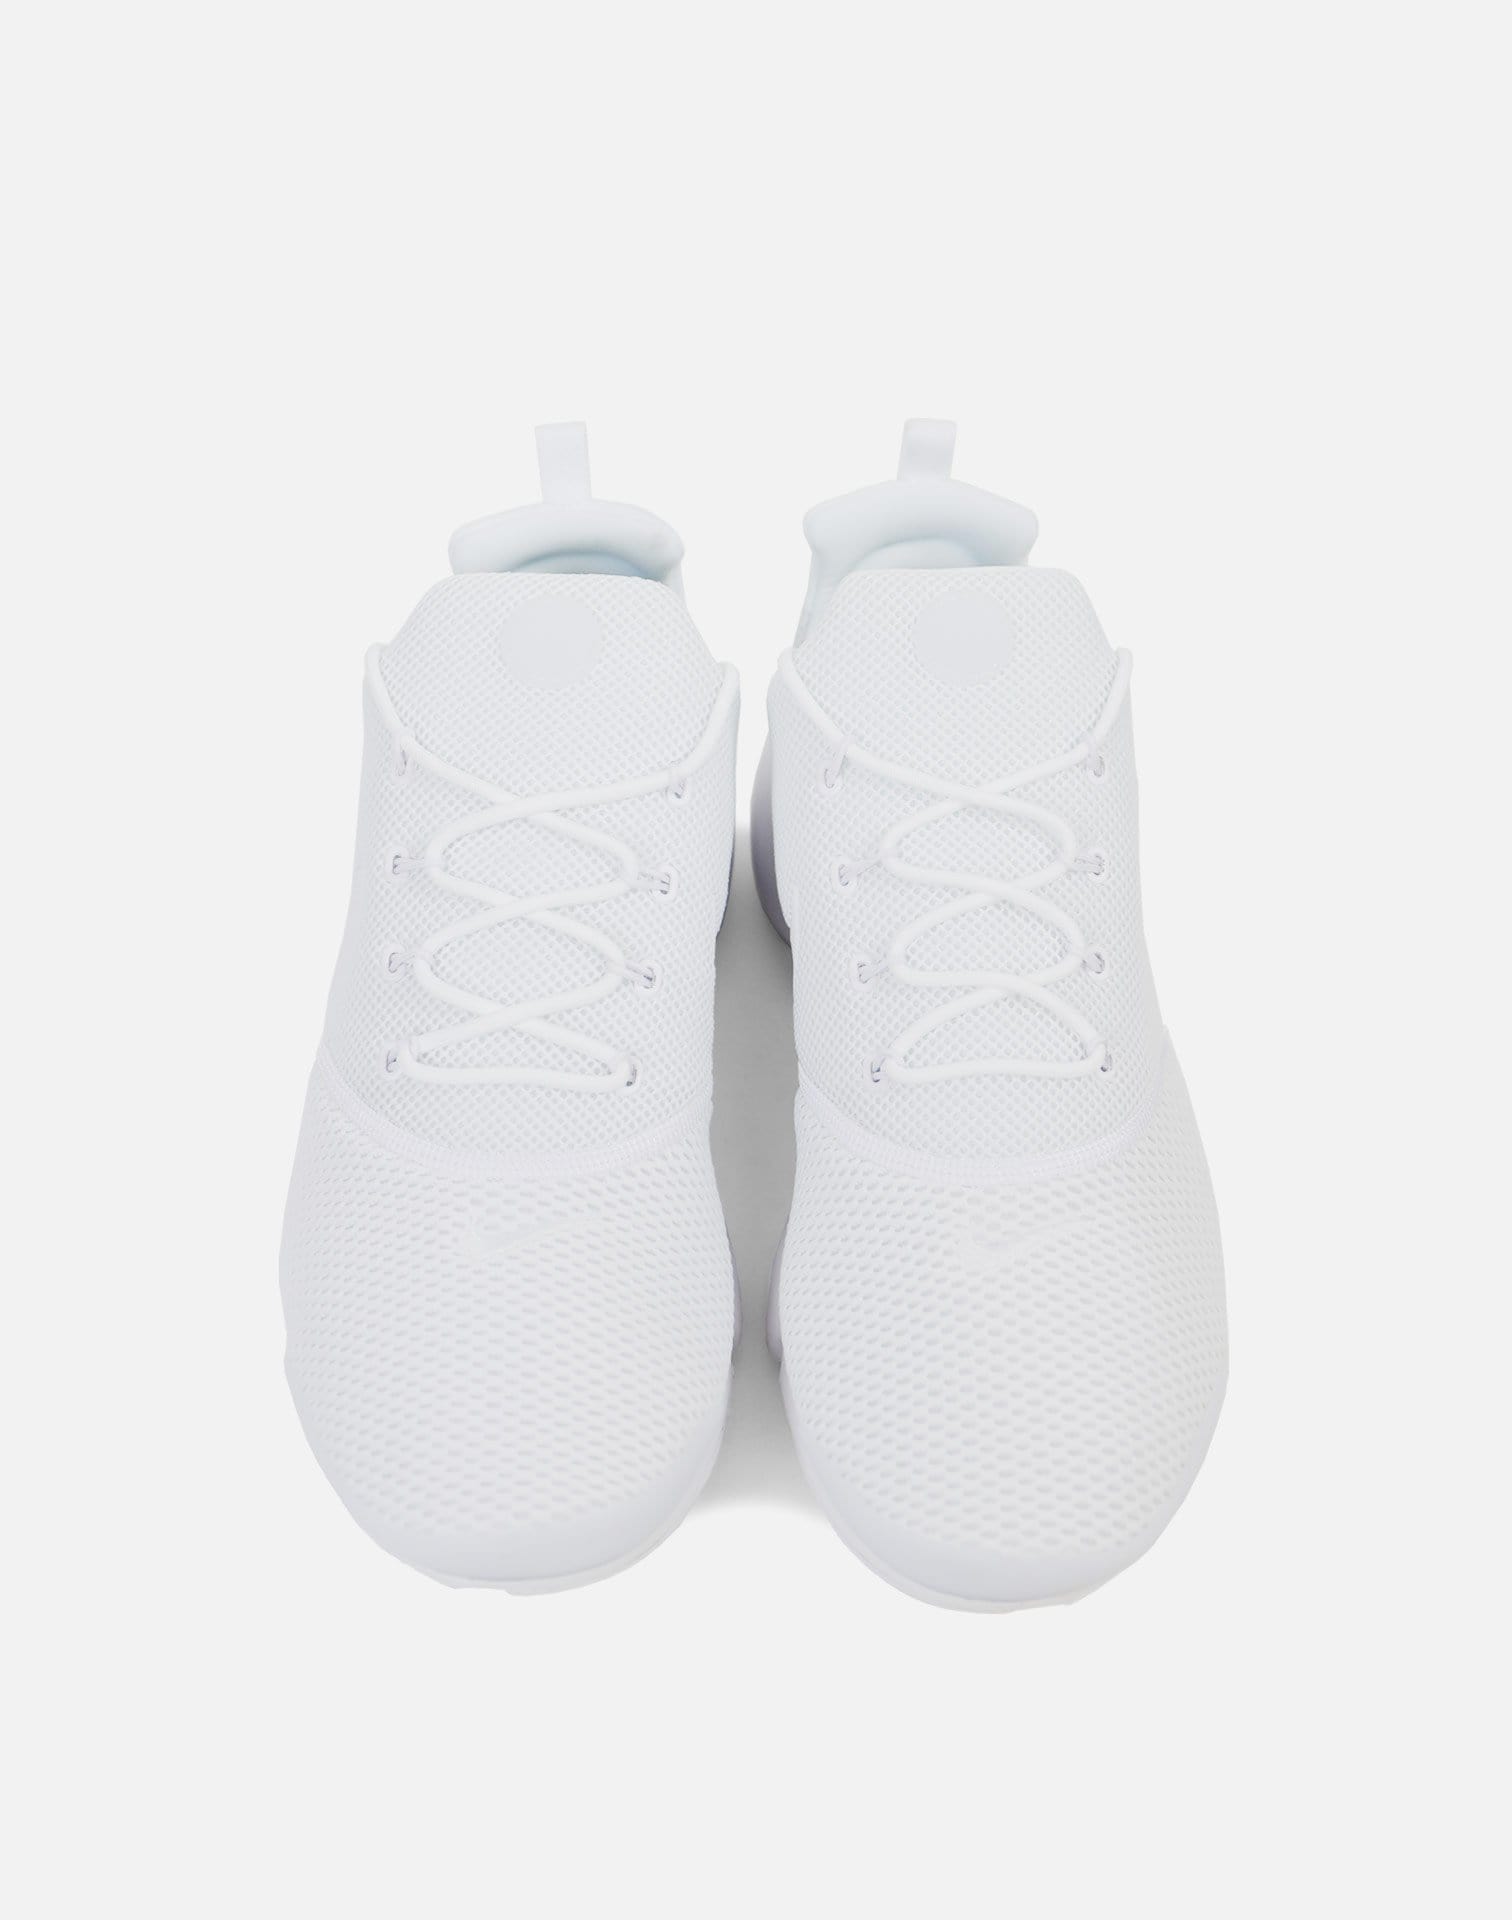 Nike Presto Fly (White/White-White)